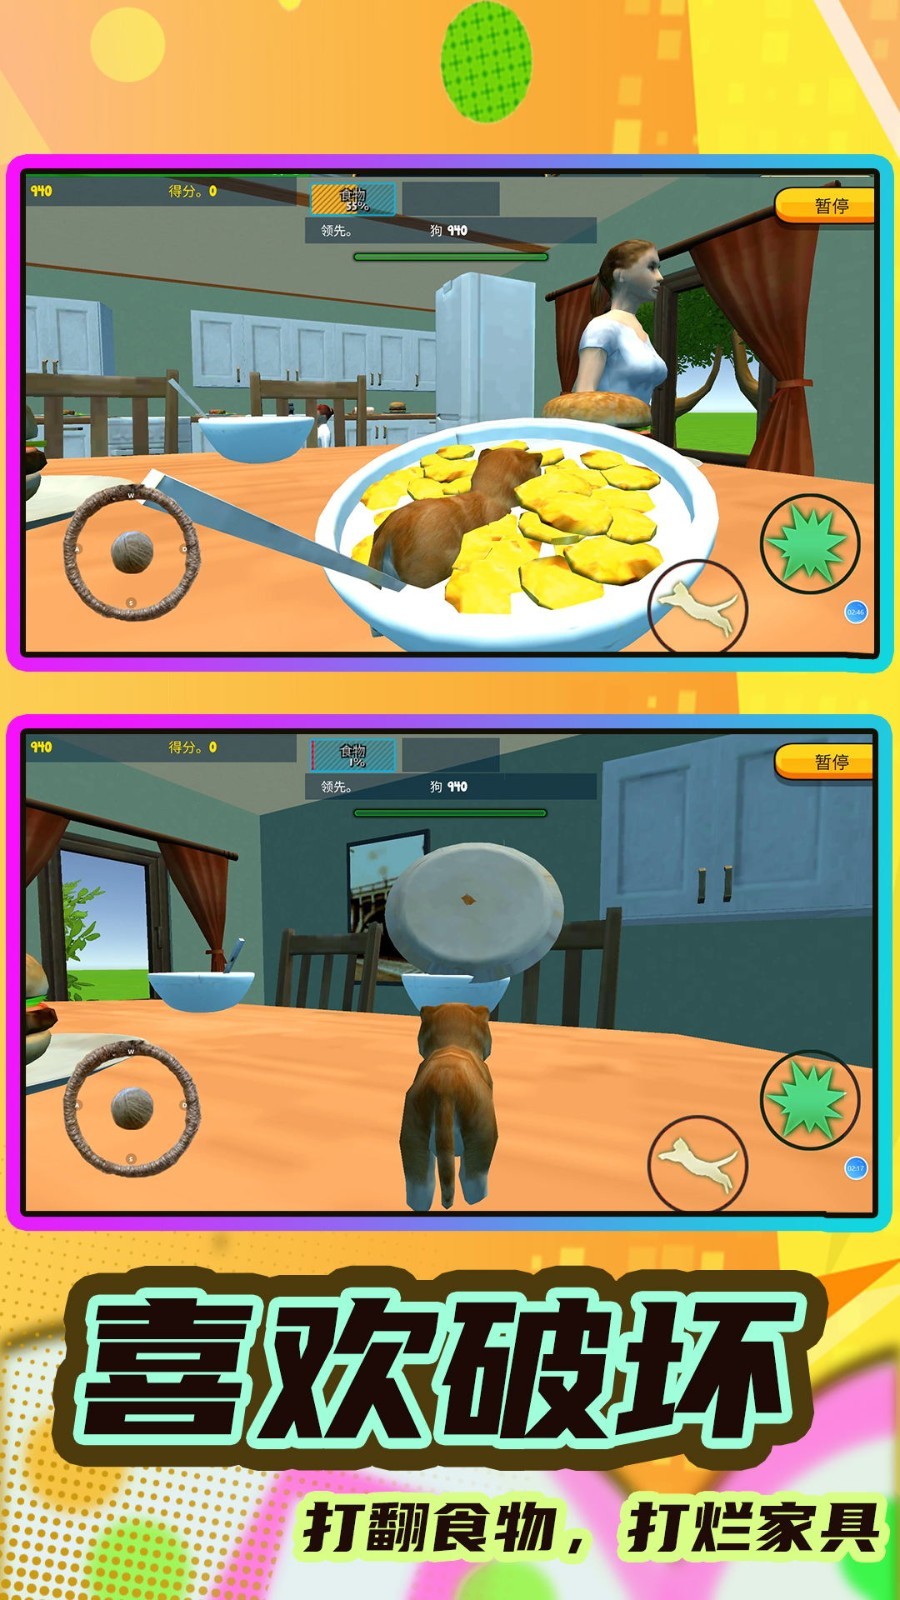 猫鼠跑酷之家安卓版游戏下载图片3